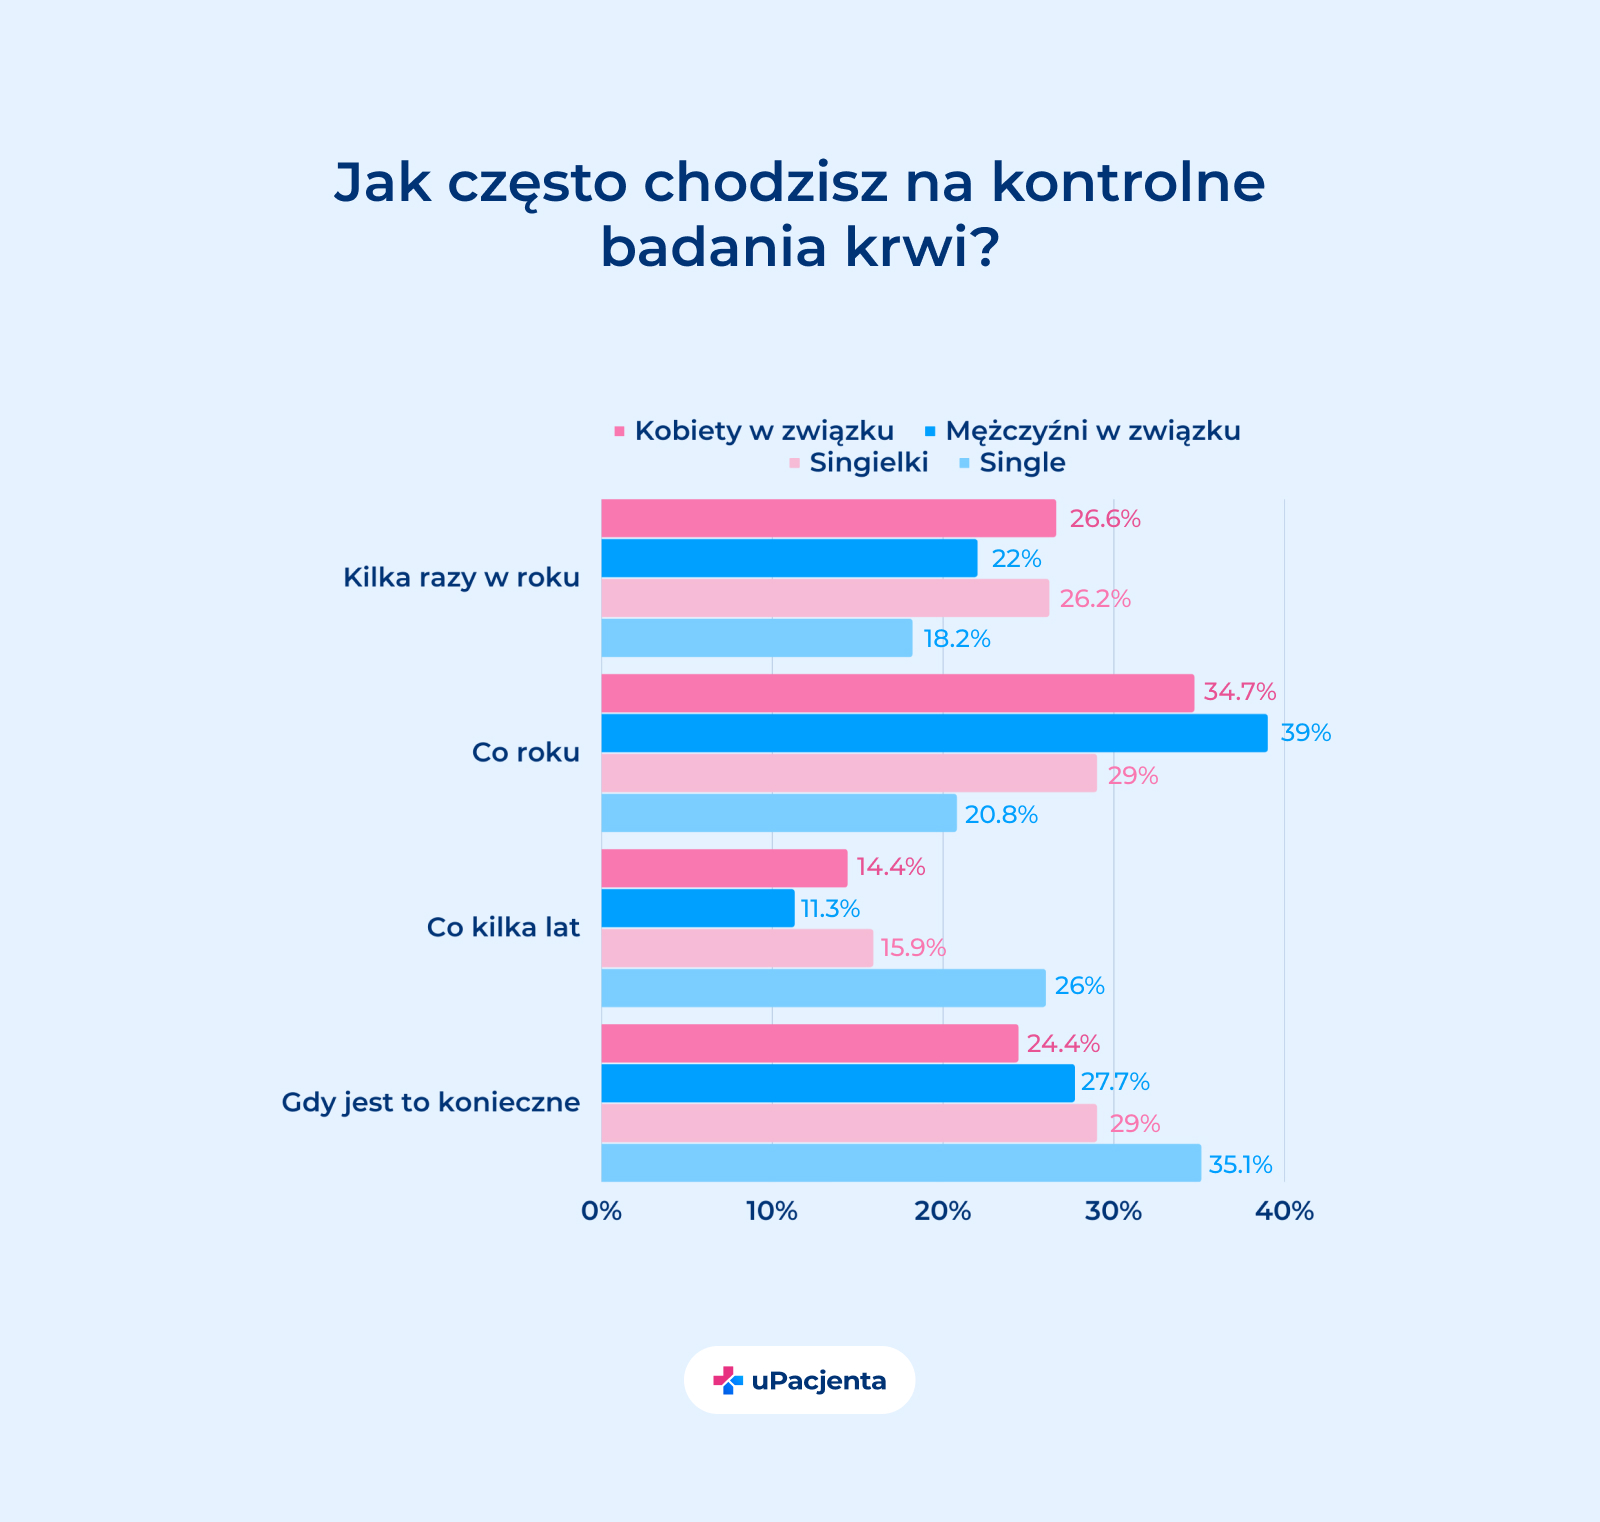 zdrowie mężczyzn w Polsce w rękach kobiet - Jak często chodzisz na badania kontrolne? wykres